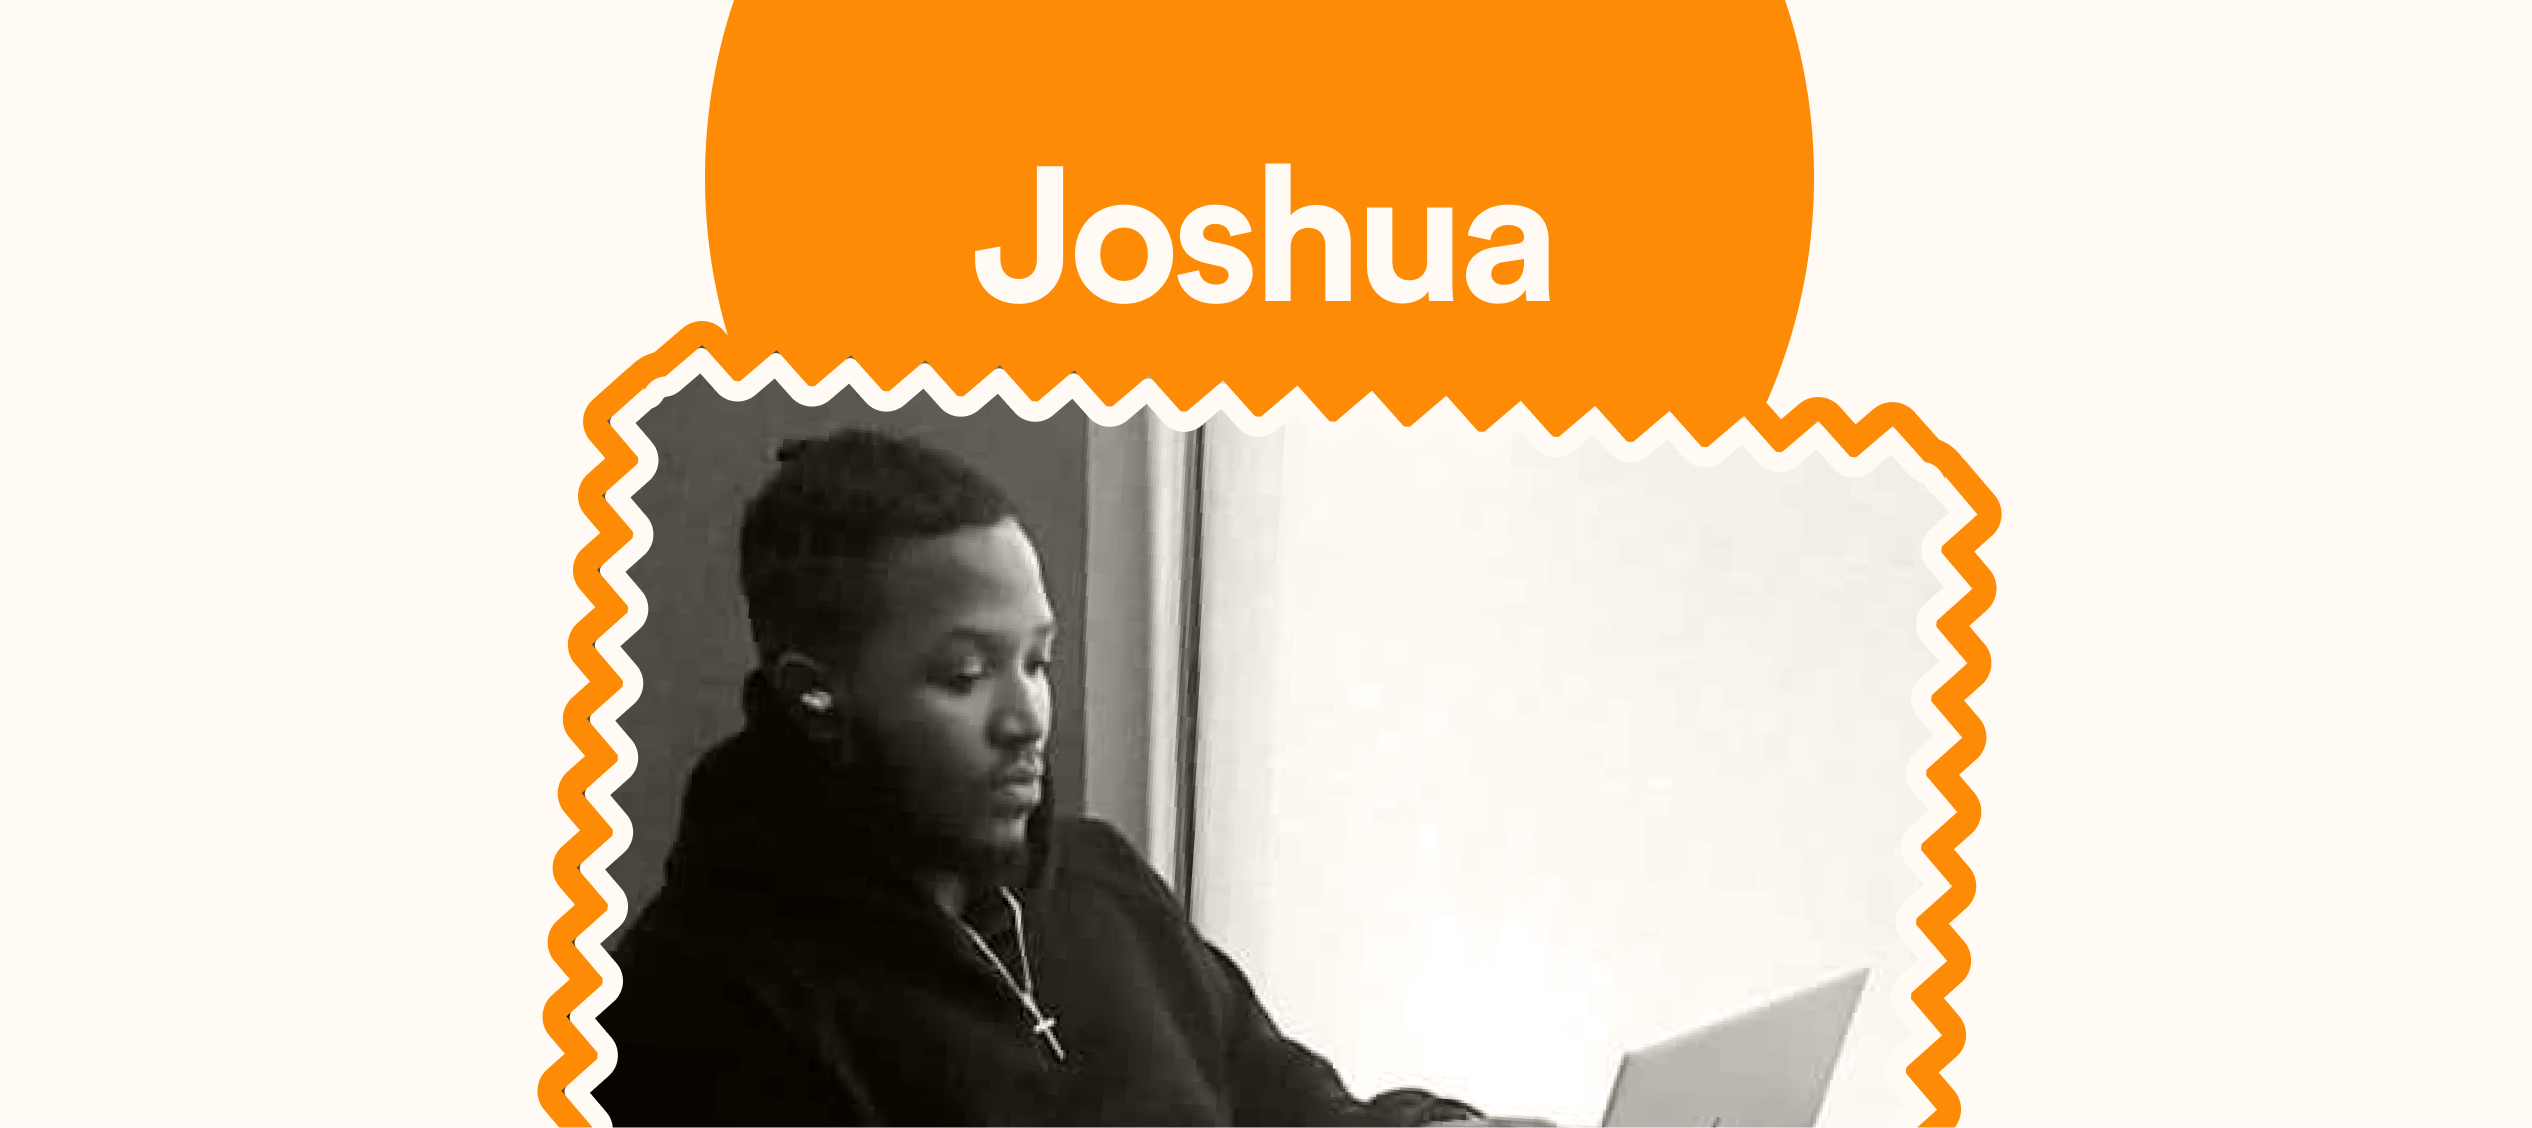 Cashramp has made me a “Micro-Entrepreneur” – Joshua.